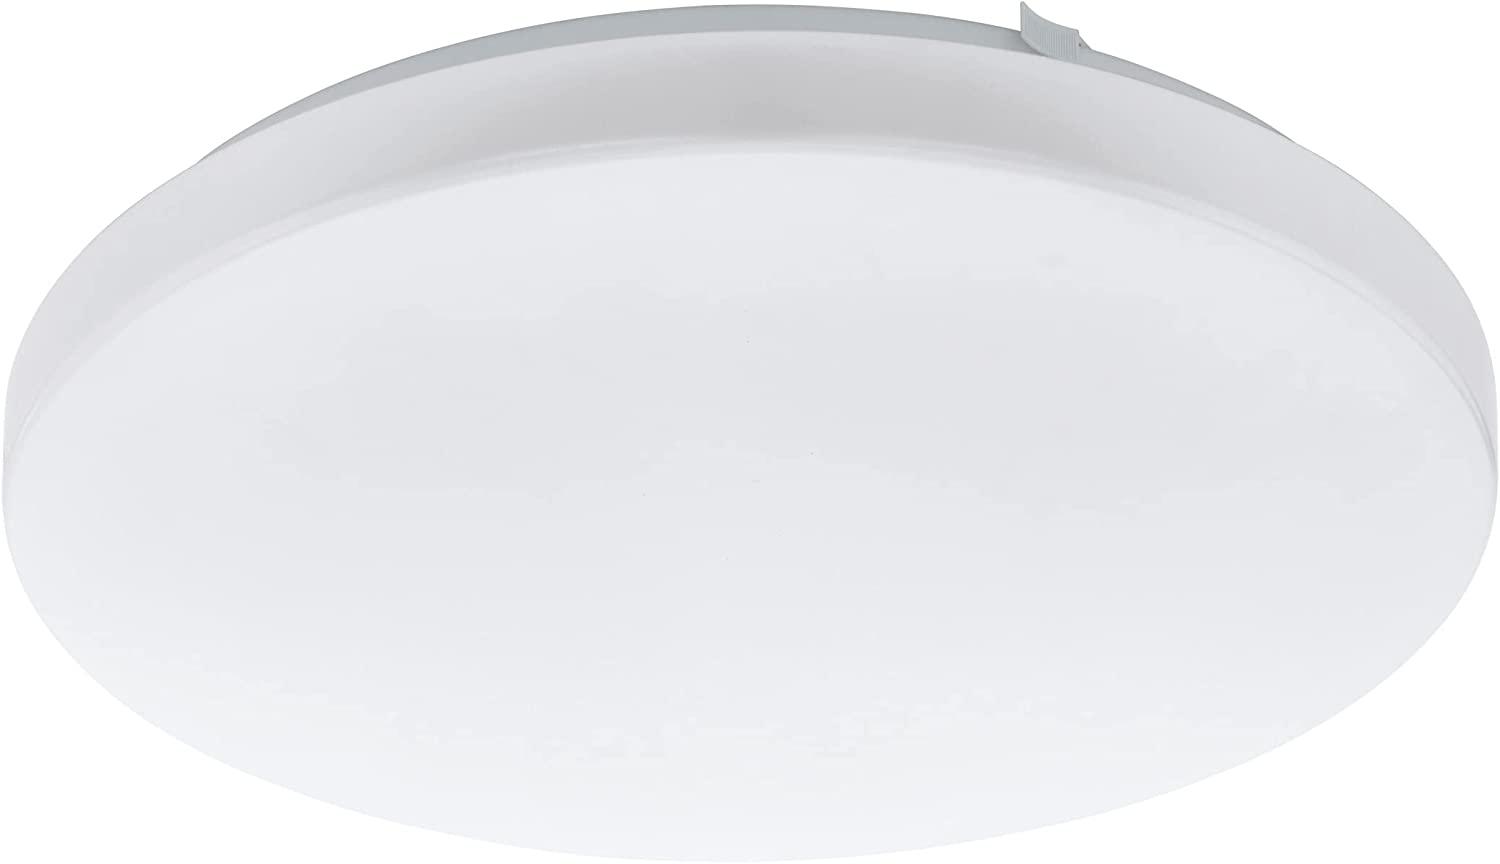 Eglo 97872 LED Deckenleuchte FRANIA 14,6W 3000K Kunststoff weiß Ø33cm H:7cm Bild 1